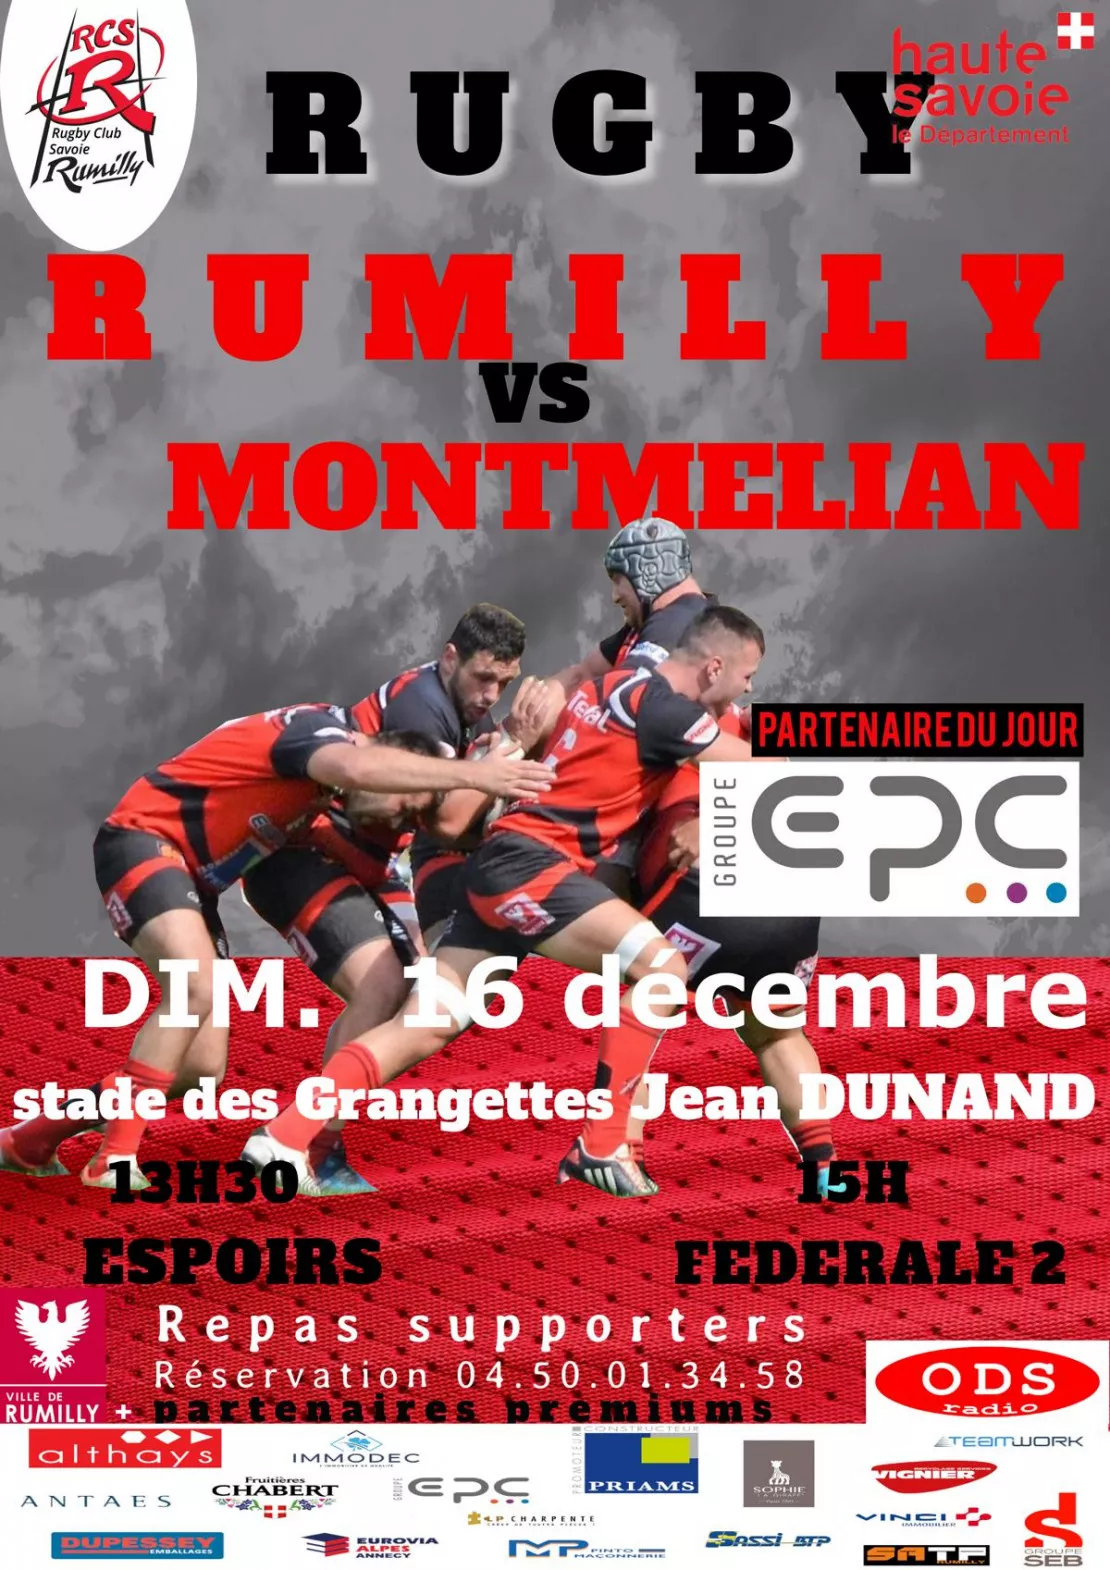 PARTENAIRE- Match du Rugby Club Savoie Rumilly au stade des Grangettes